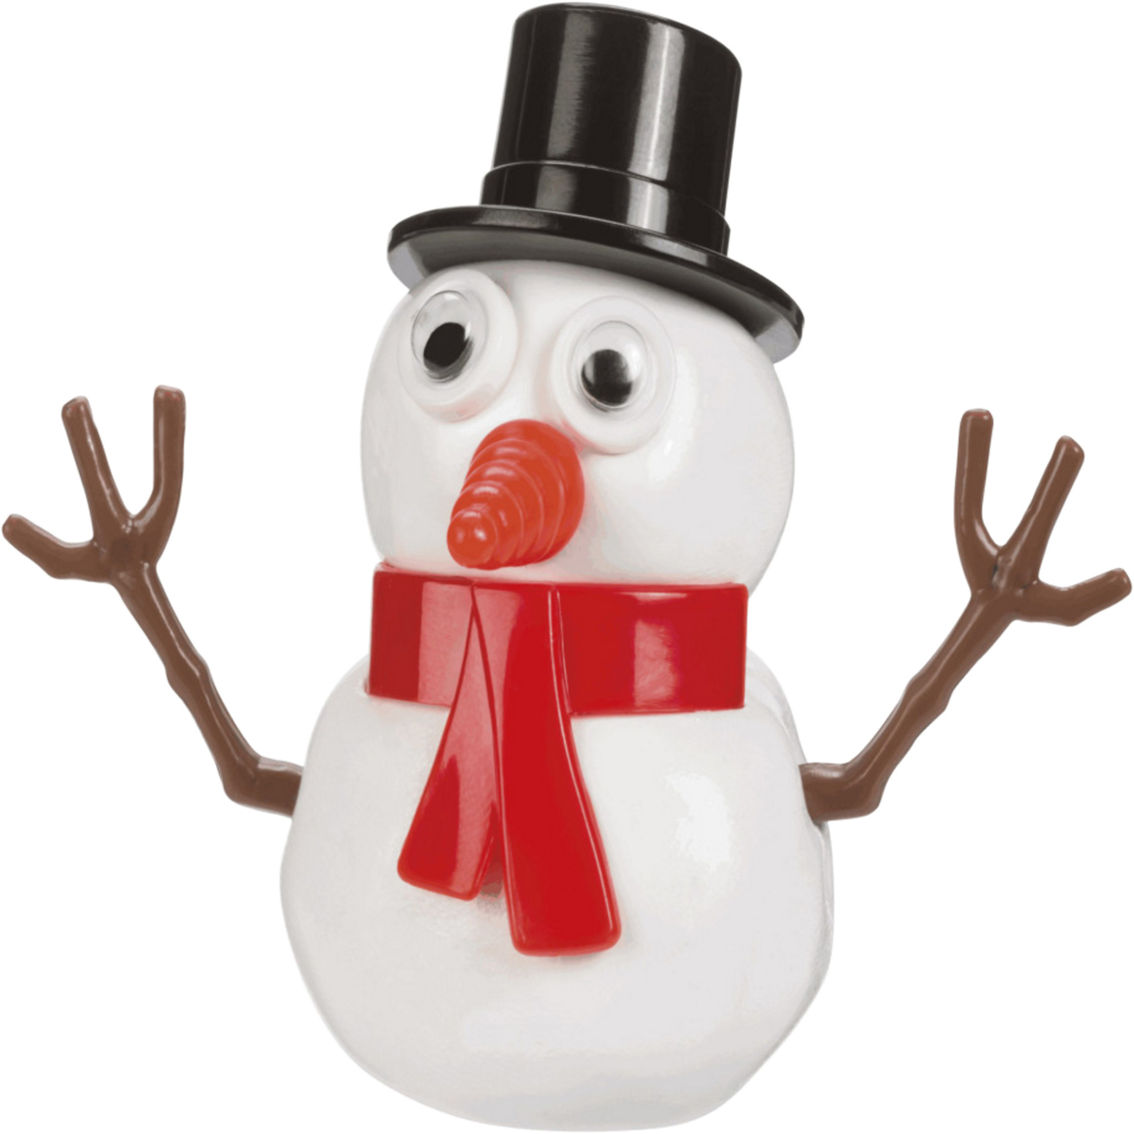 Toysmith Melting Snowman Playset - Image 3 of 4